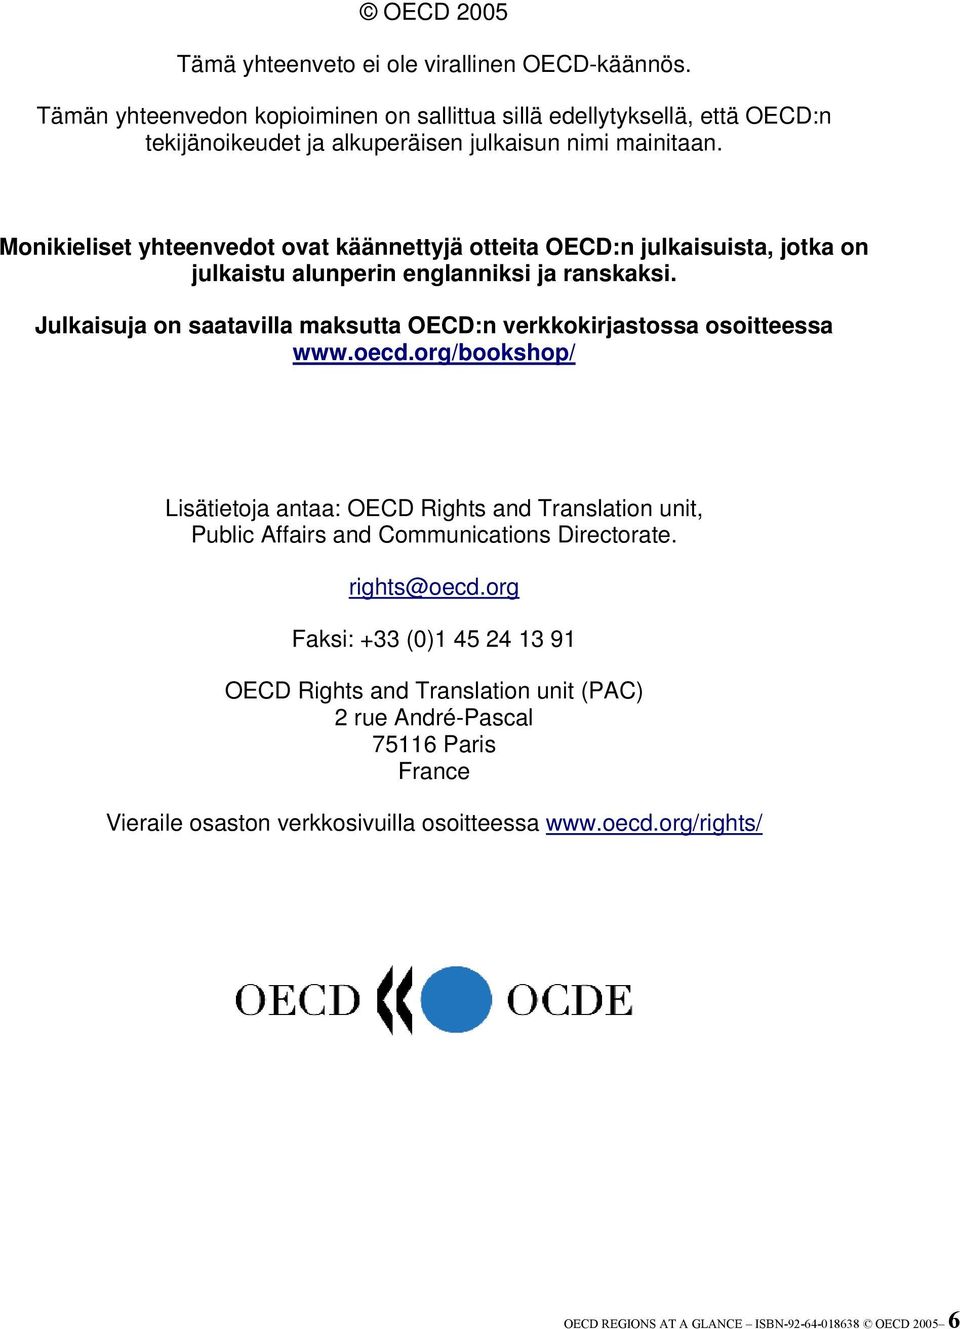 Monikieliset yhteenvedot ovat käännettyjä otteita OECD:n julkaisuista, jotka on julkaistu alunperin englanniksi ja ranskaksi.